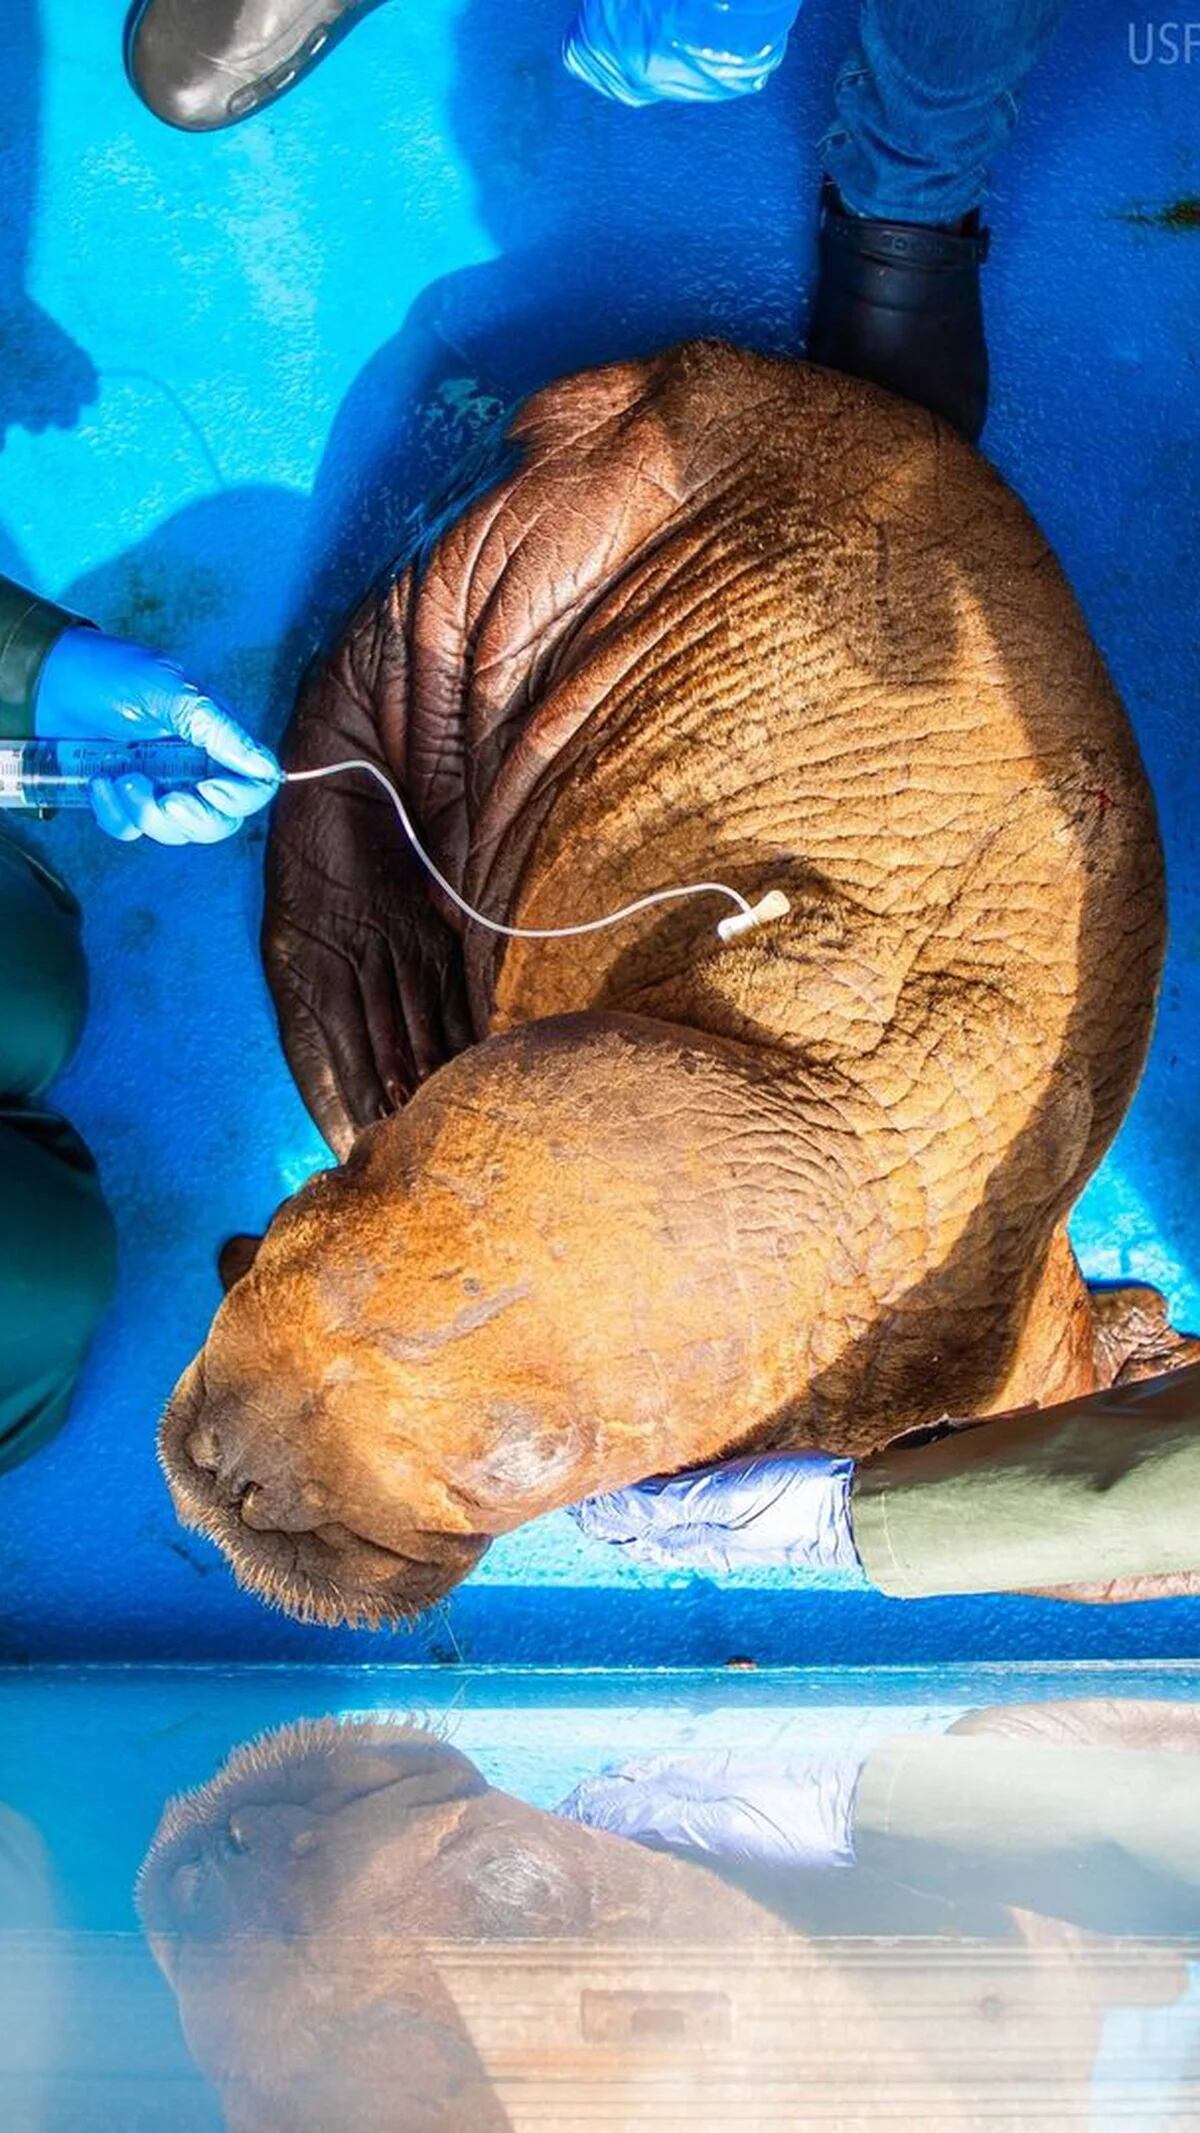 Una rara cría de morsa rescatada en Alaska recibe atención ininterrumpida